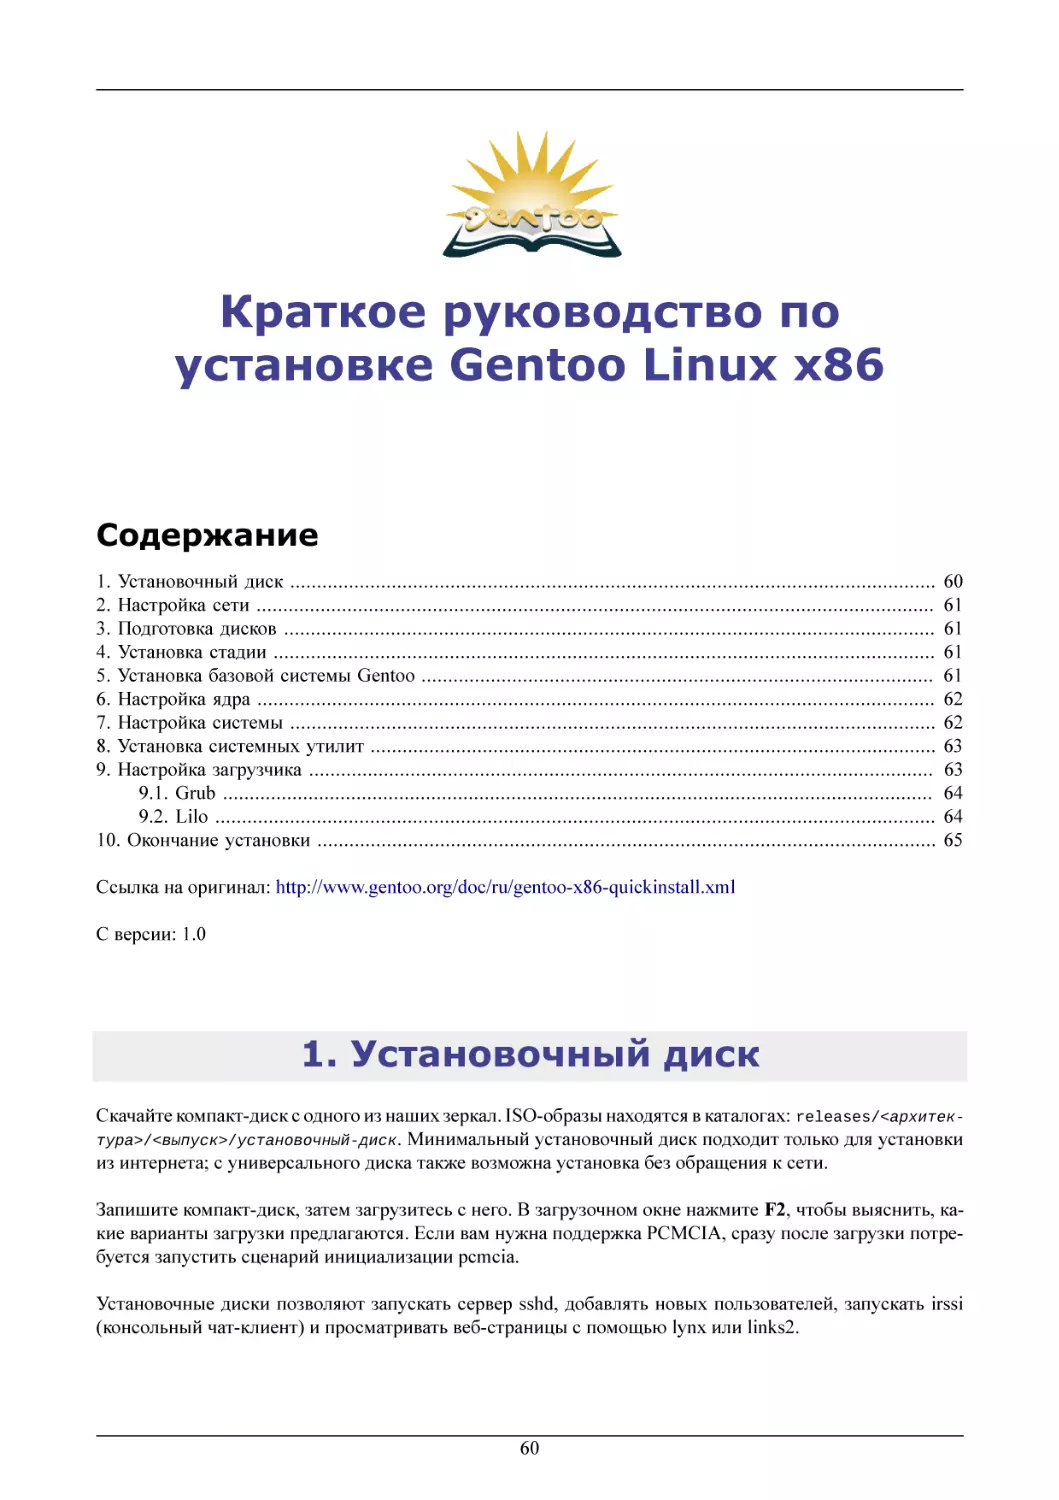 Краткое руководство по установке Gentoo Linux x86
Установочный диск